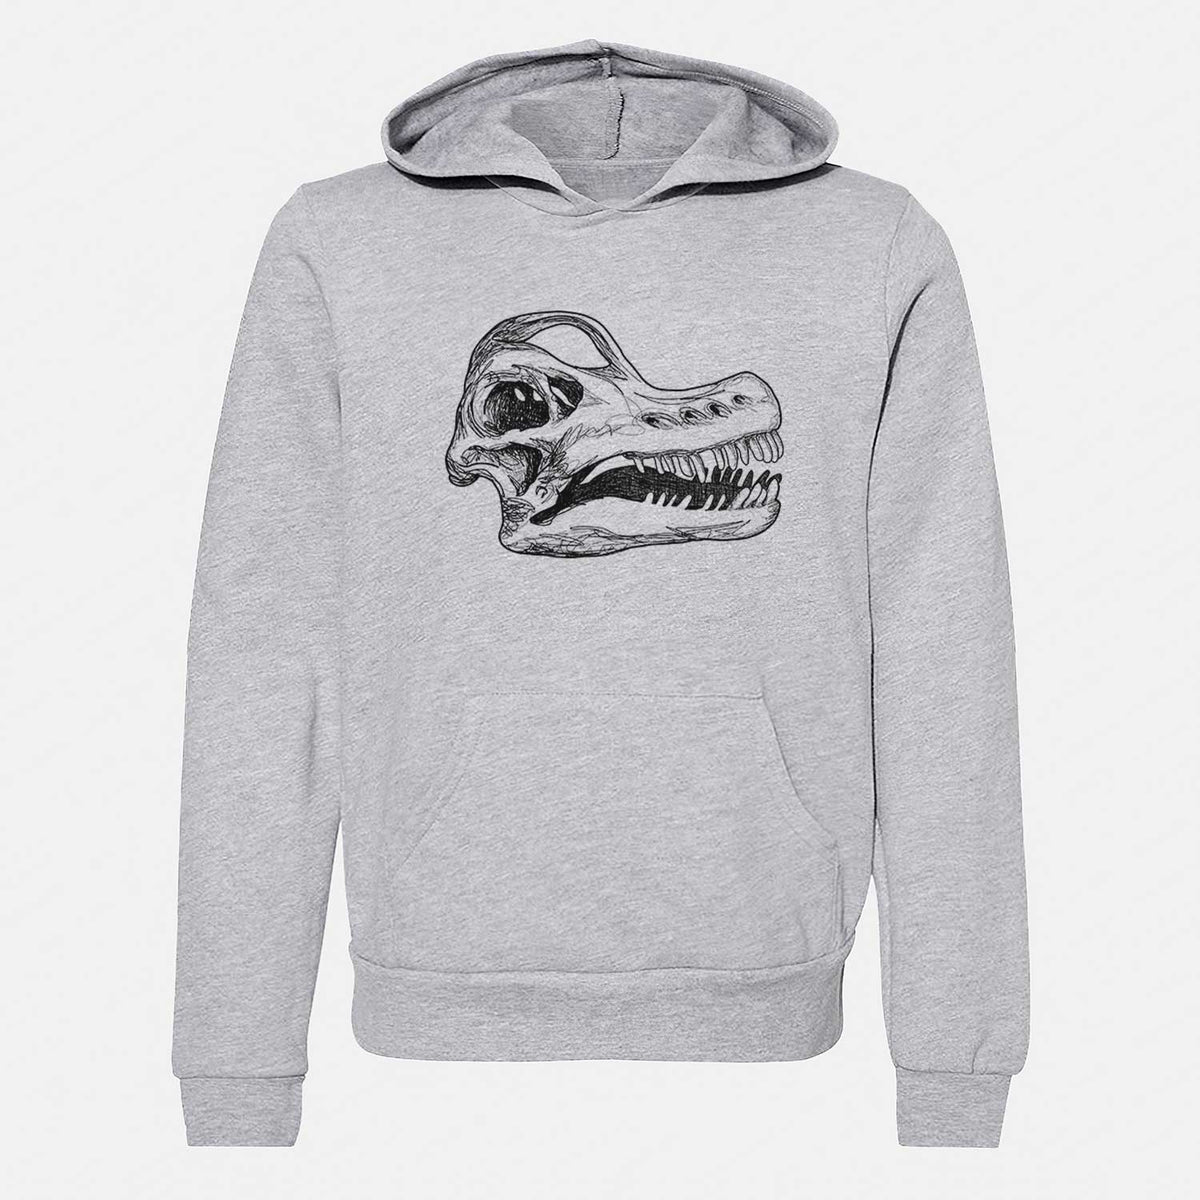 Brachiosaurus Skull - Youth Hoodie Sweatshirt